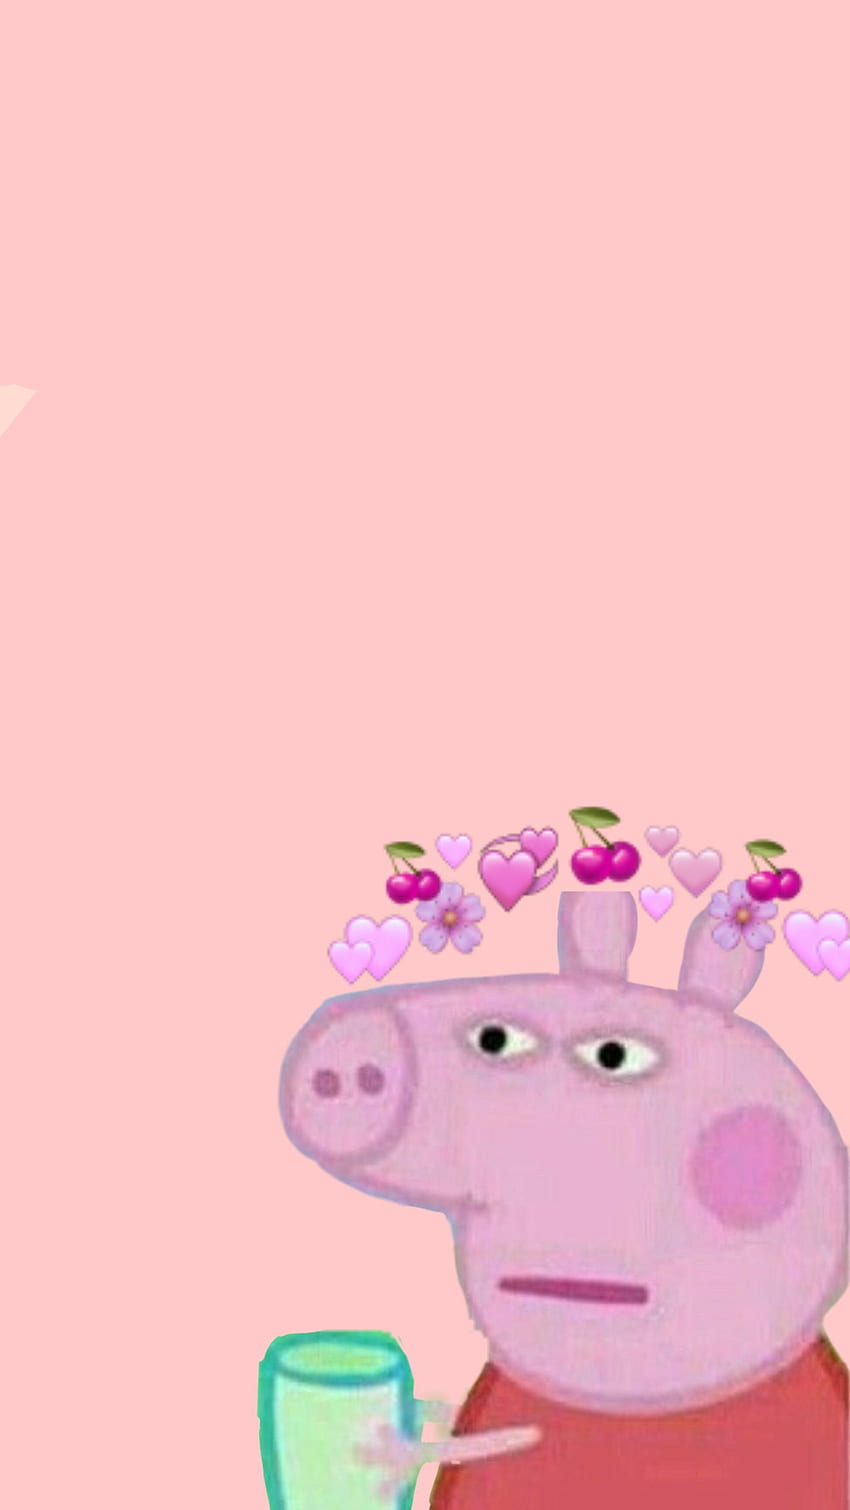 Peppa Pig , Baddie Peppa Pig HD phone wallpaper | Pxfuel